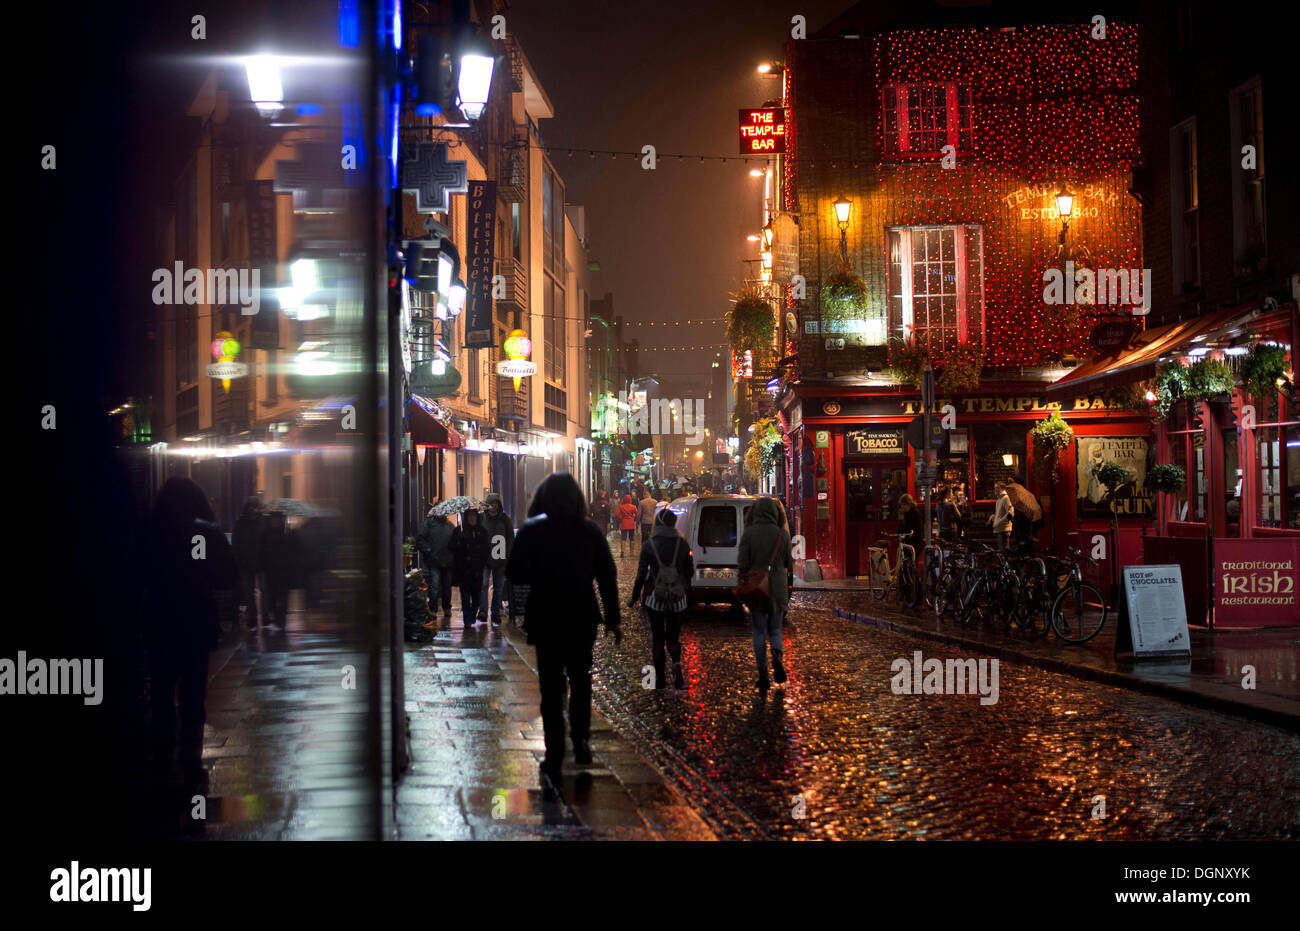 Les passants dans la rue devant le Temple Bar, la nuit, Dublin, Leinster, Irlande Banque D'Images